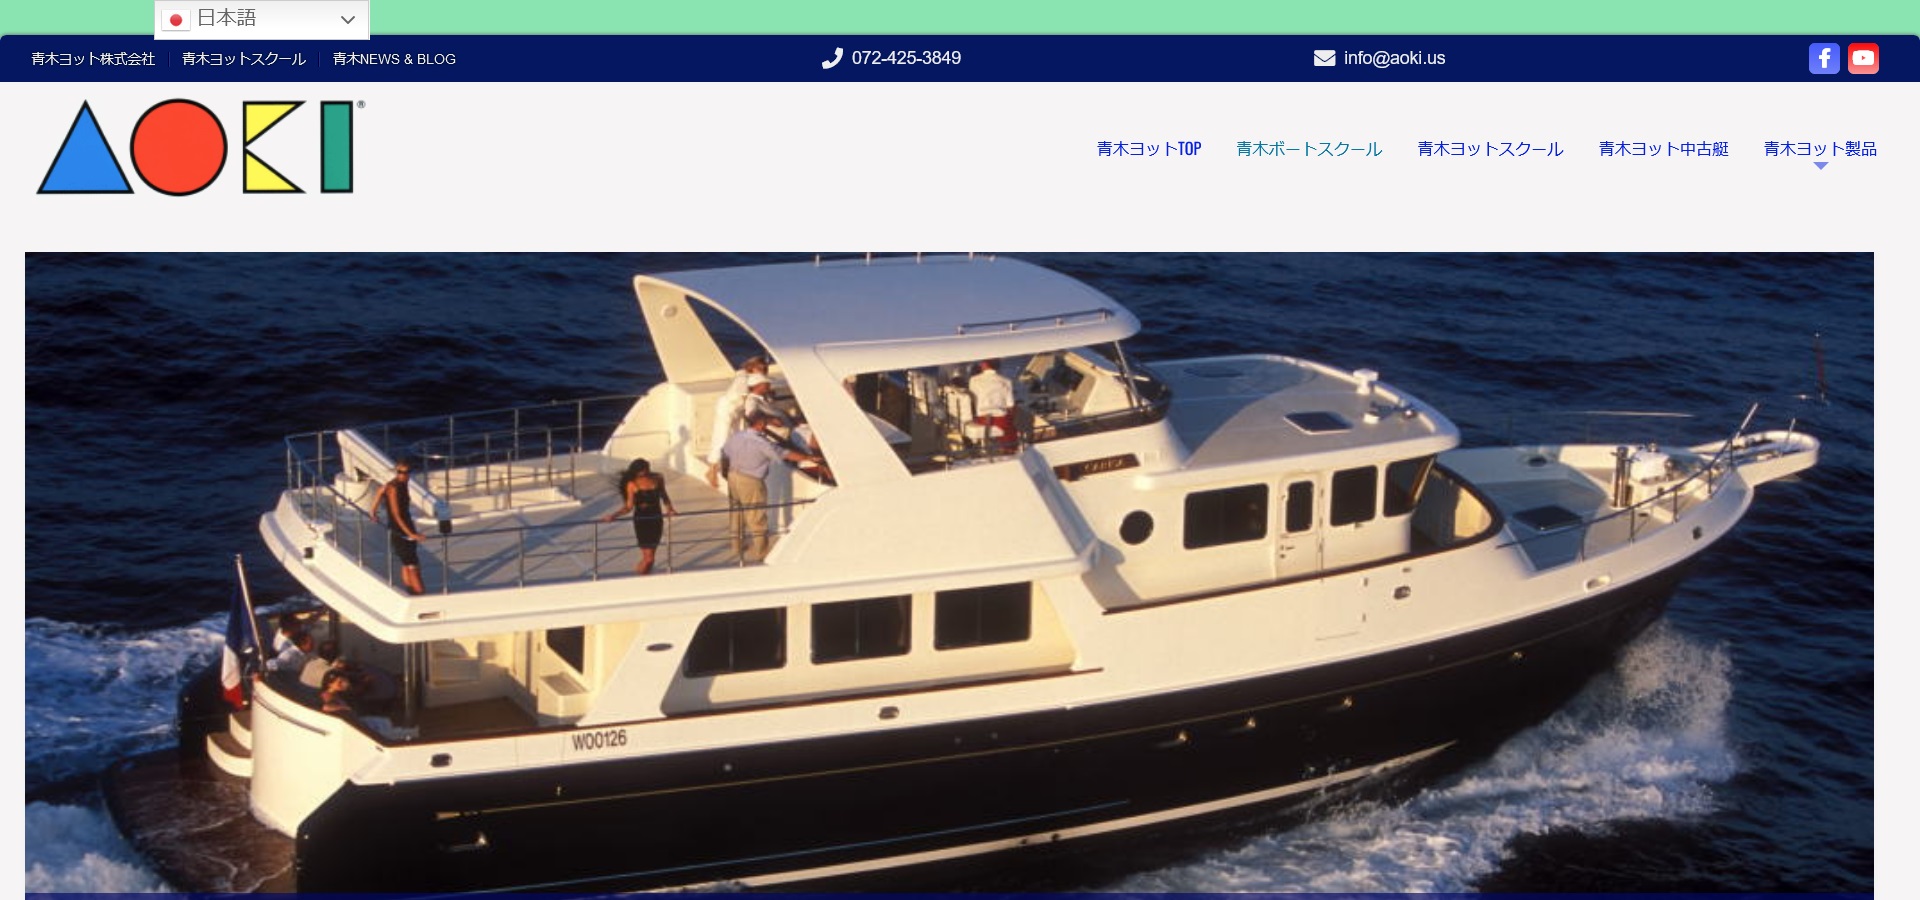 マリンライセンスロイヤル大阪で小型船舶免許を取得